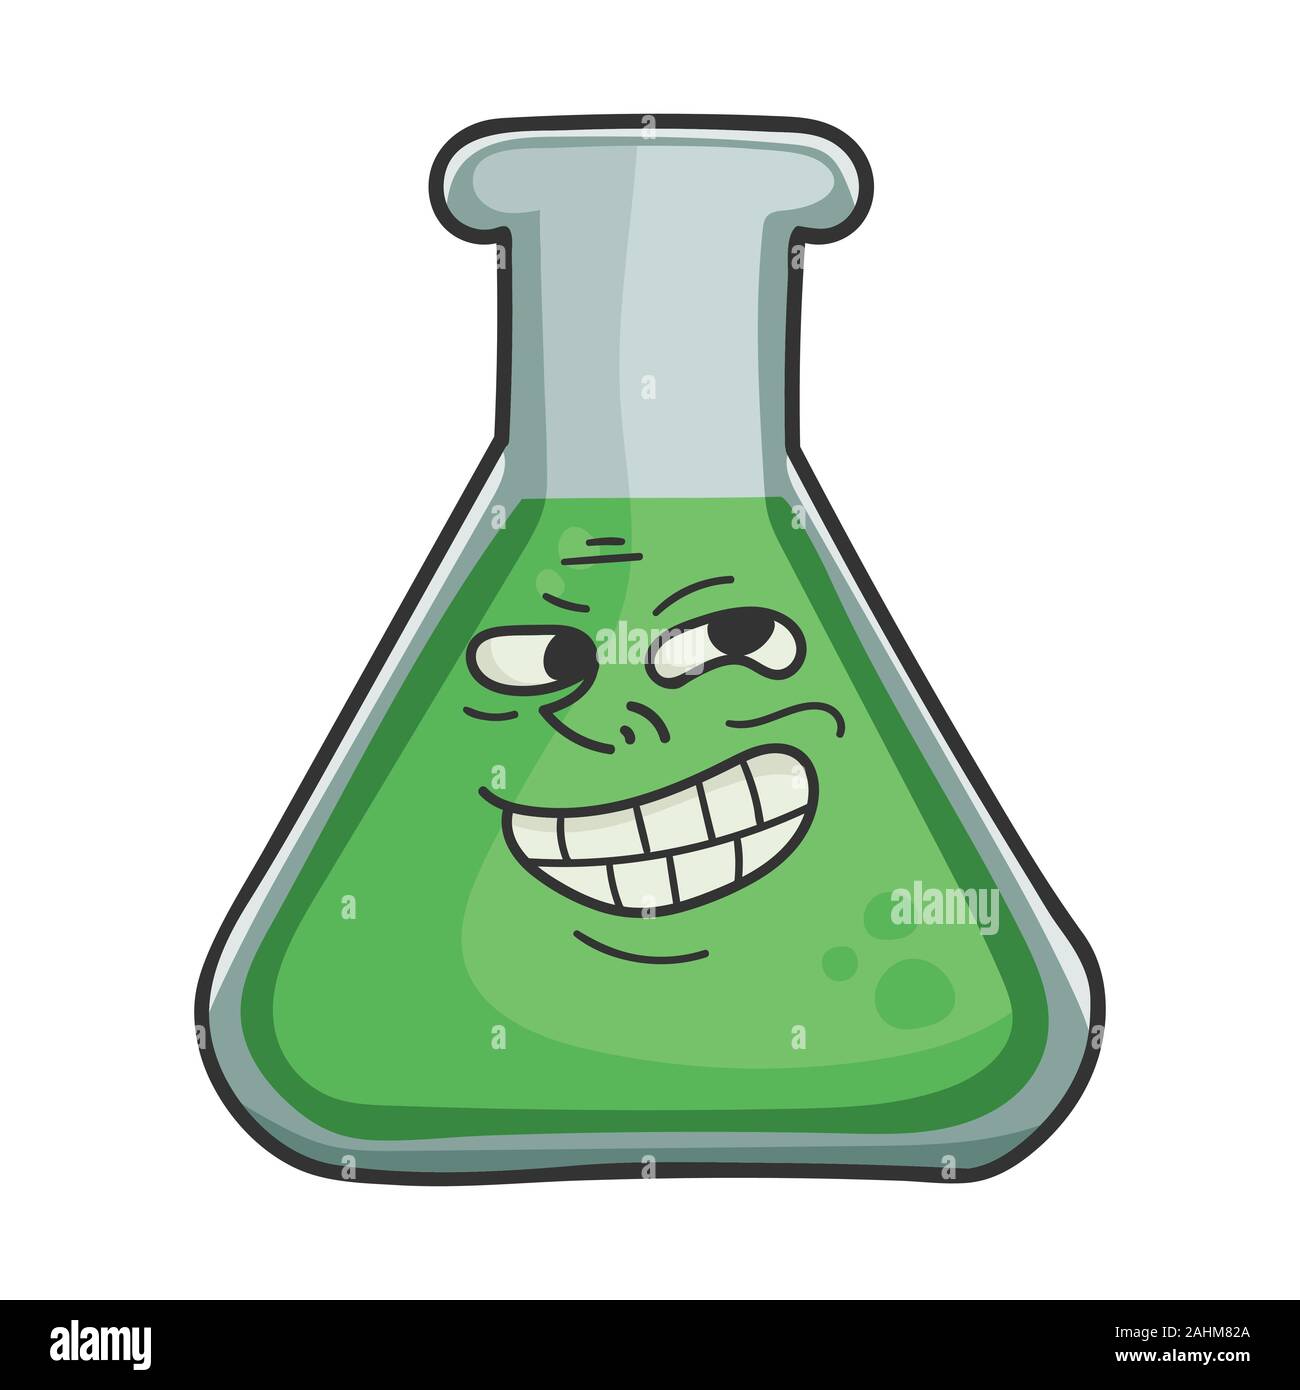 Trolling meme Wissenschaft Reagenzglas cartoon isoliert auf weißem Stock Vektor